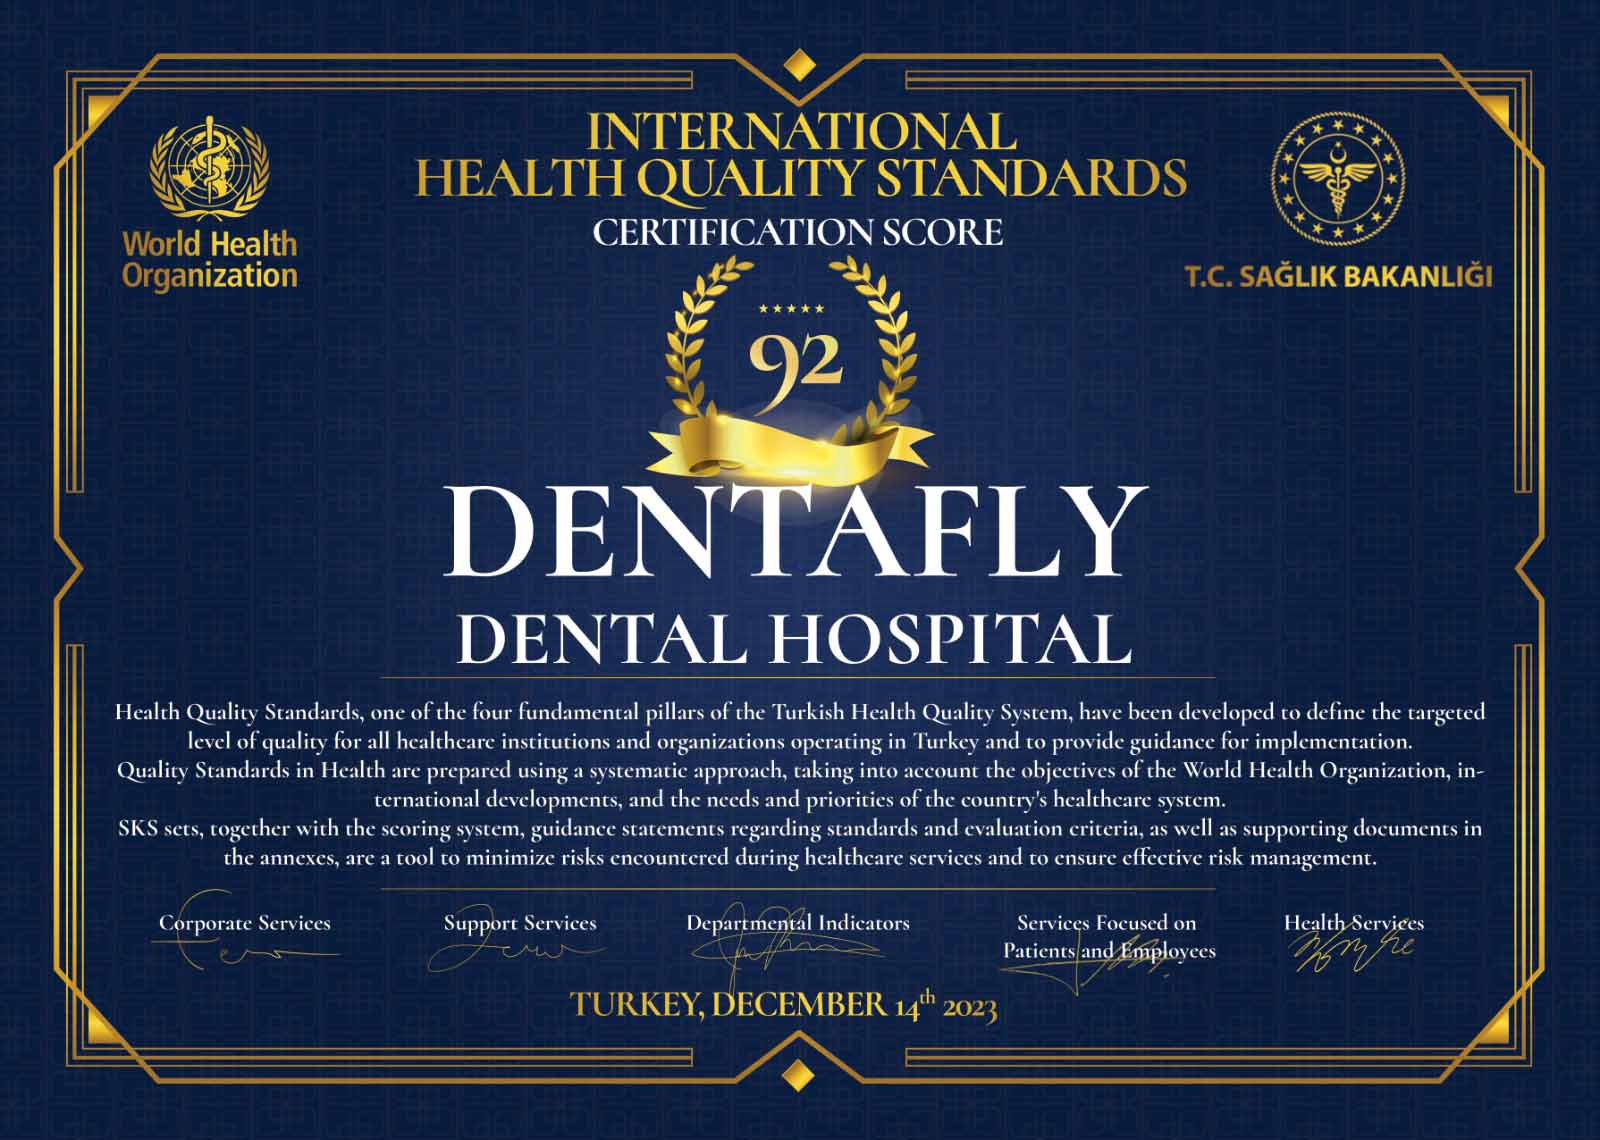 International Dental Hospital